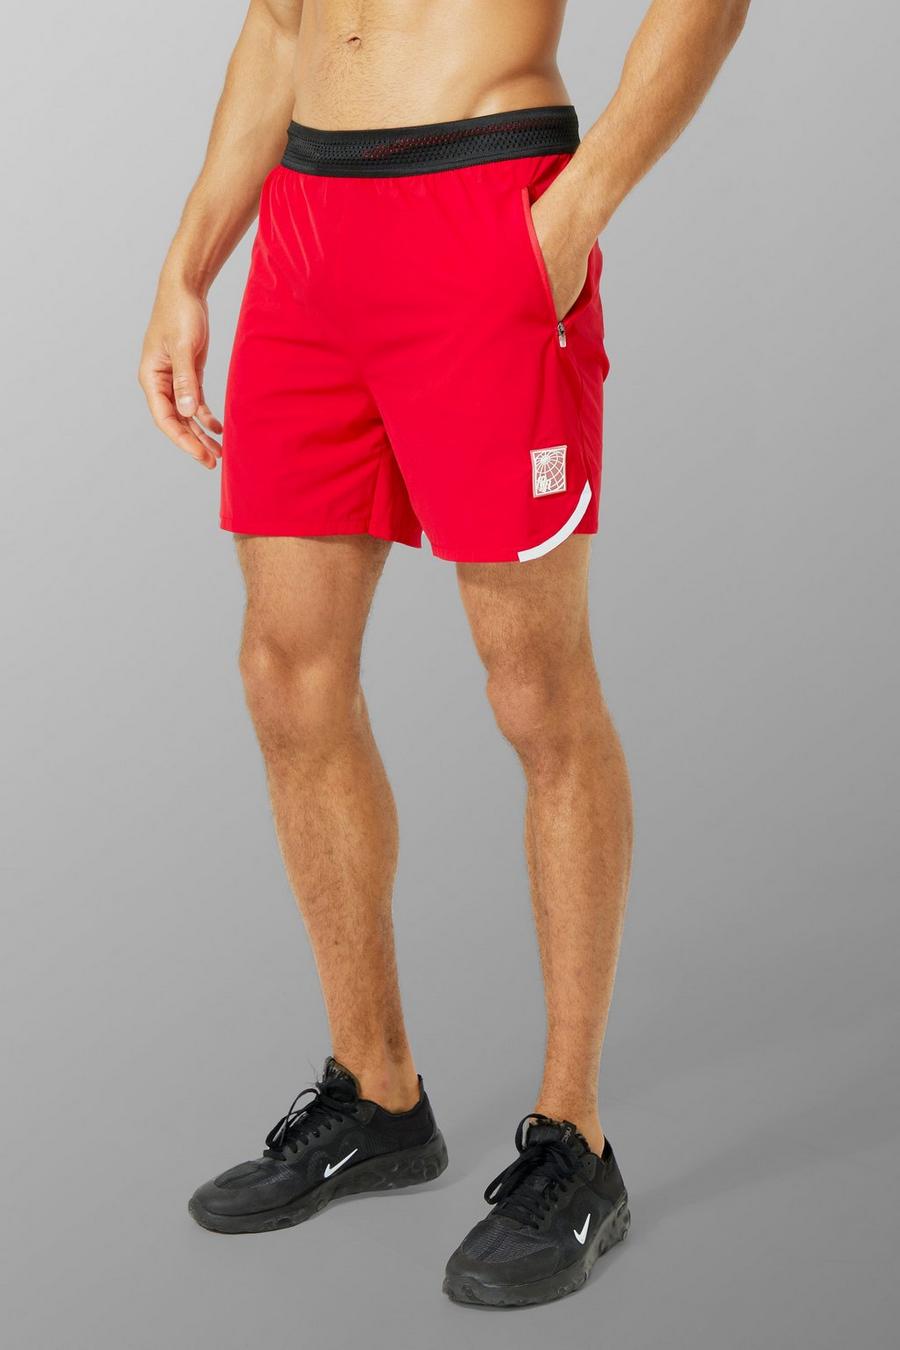 Pantaloncini Man Active con dettagli riflettenti, Red rosso